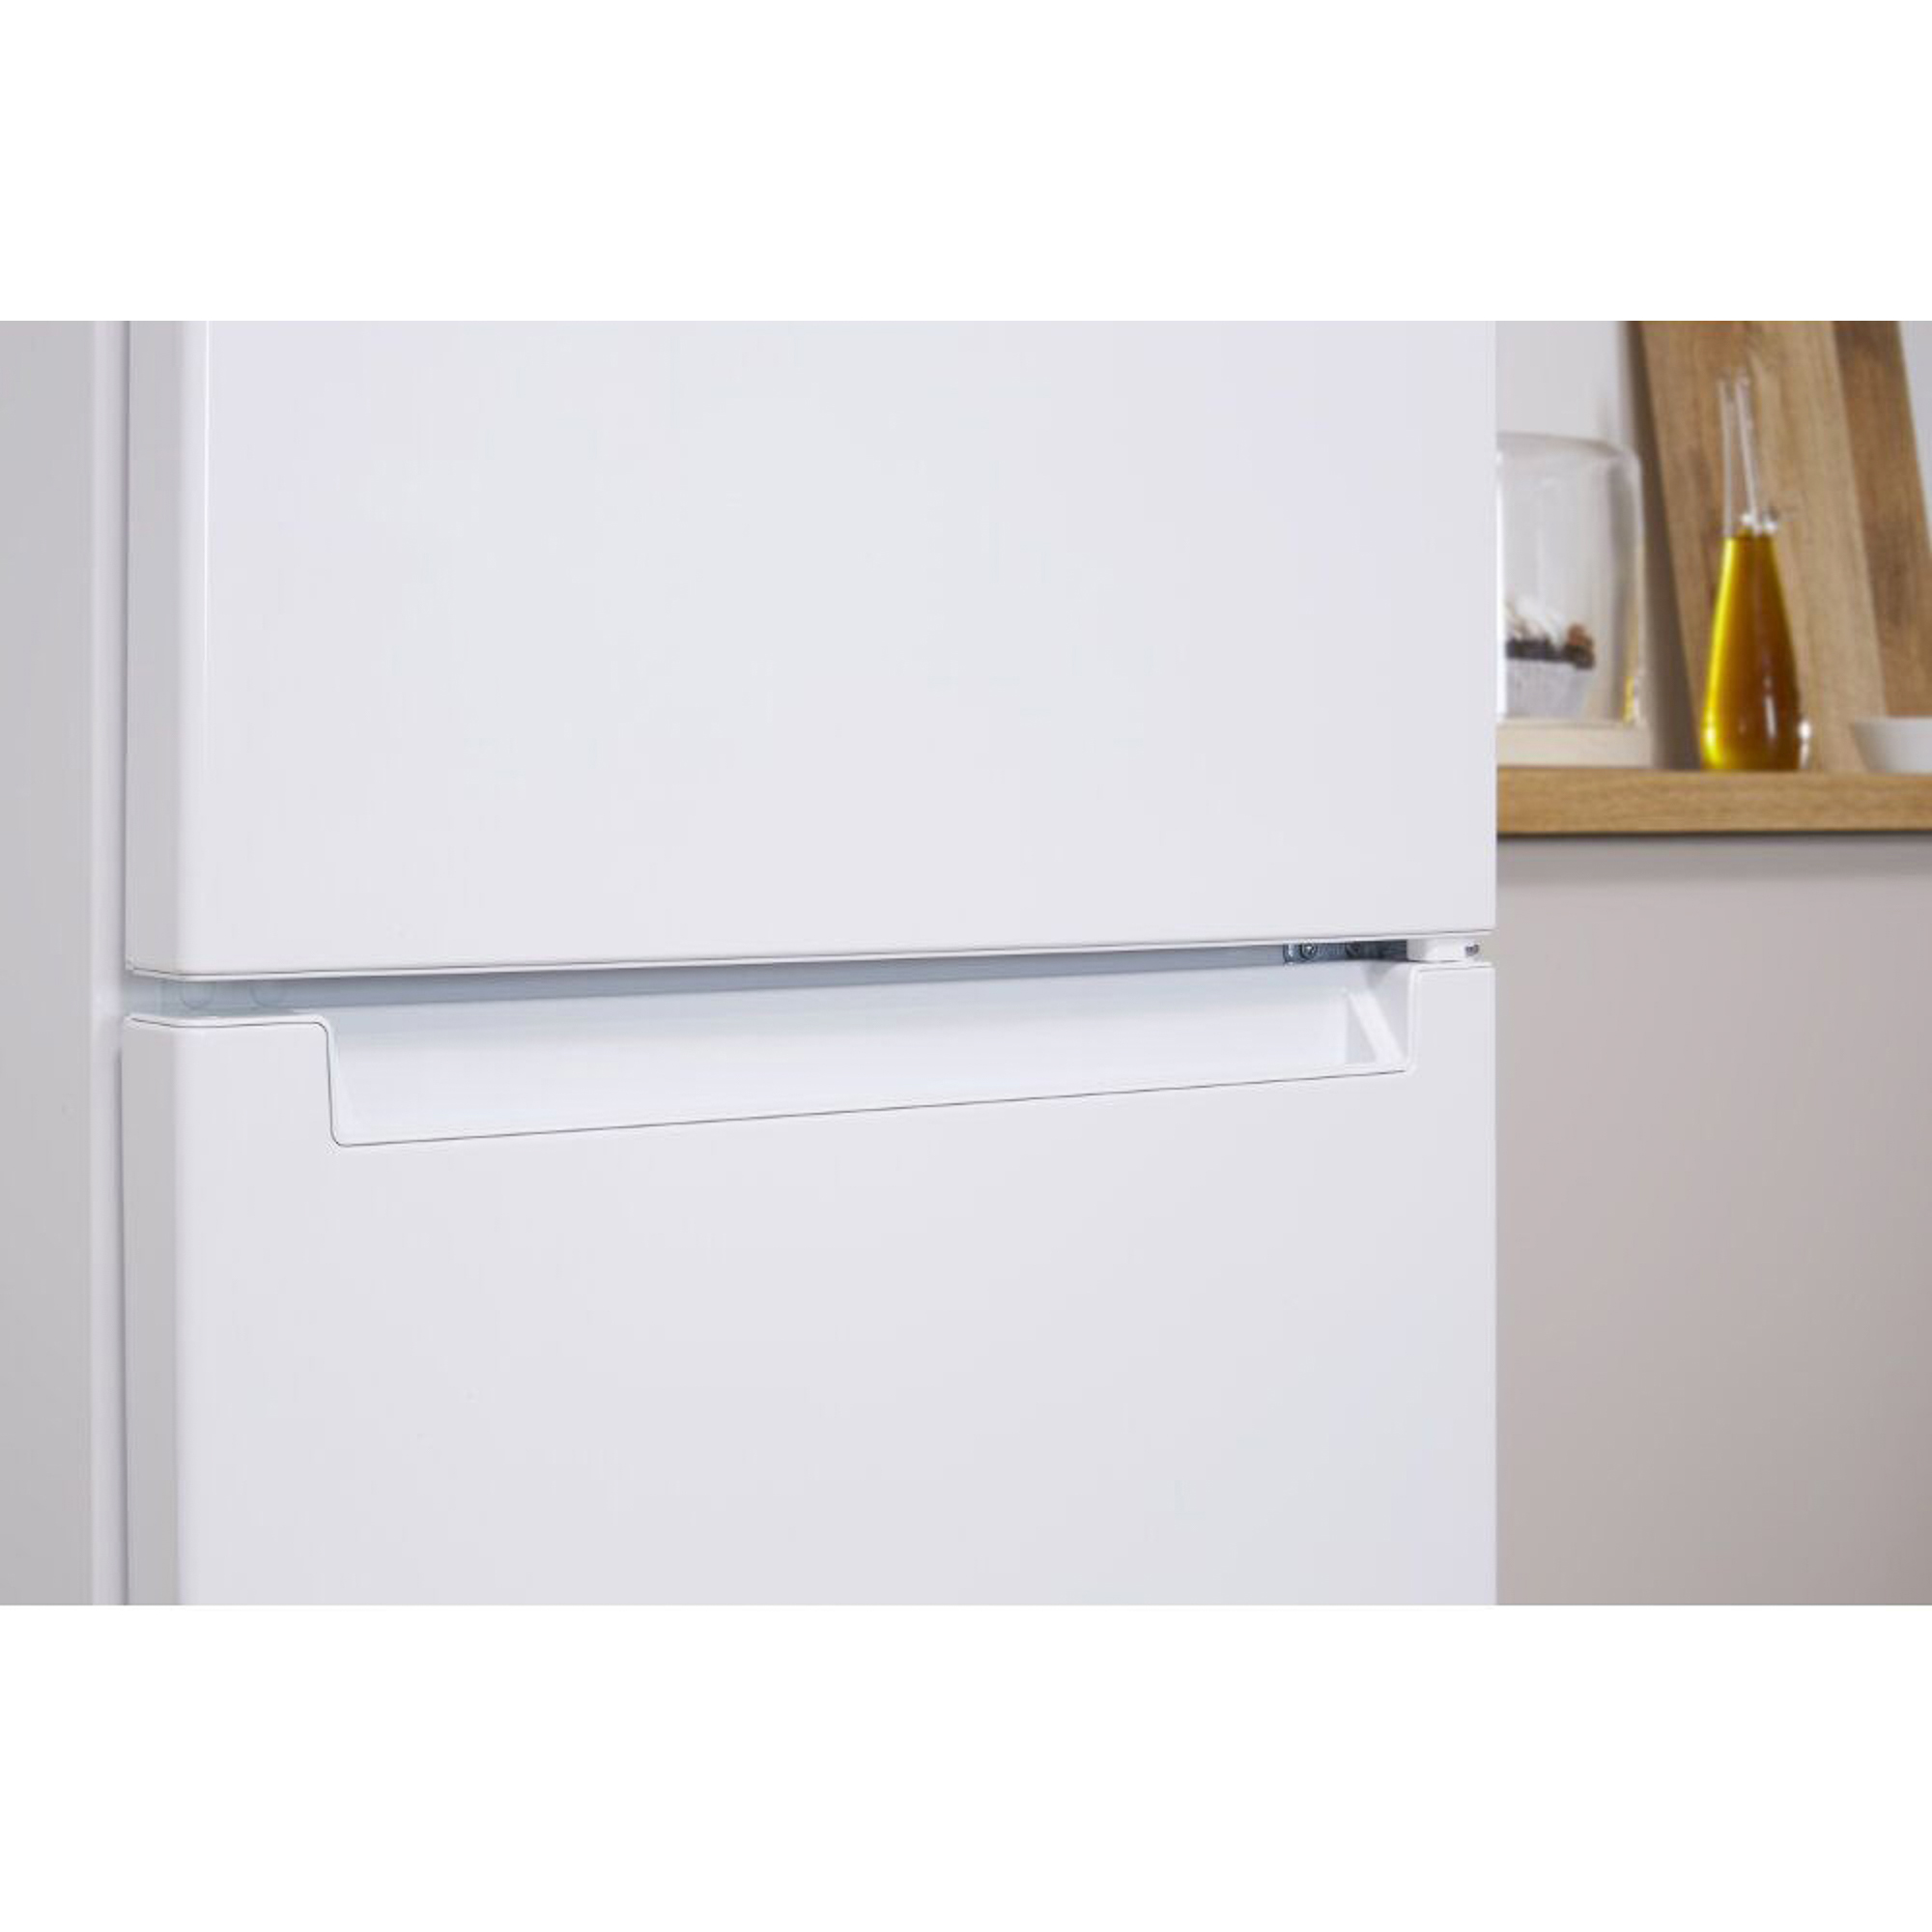 Холодильник Indesit DS 4200 W, цвет белый - фото 3